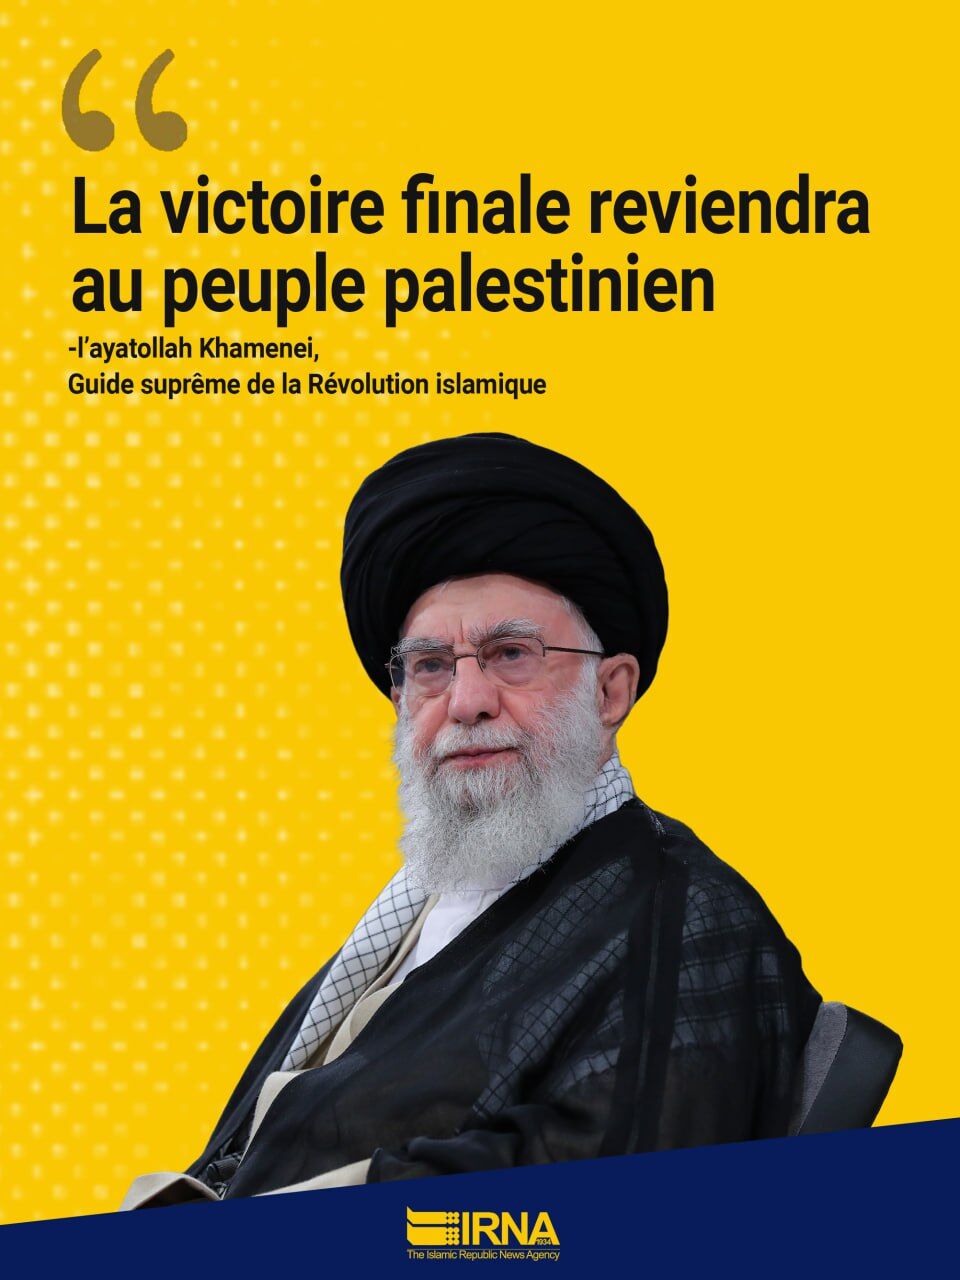 La victoire finale reviendra au peuple palestinien (l’ayatollah Khamenei)